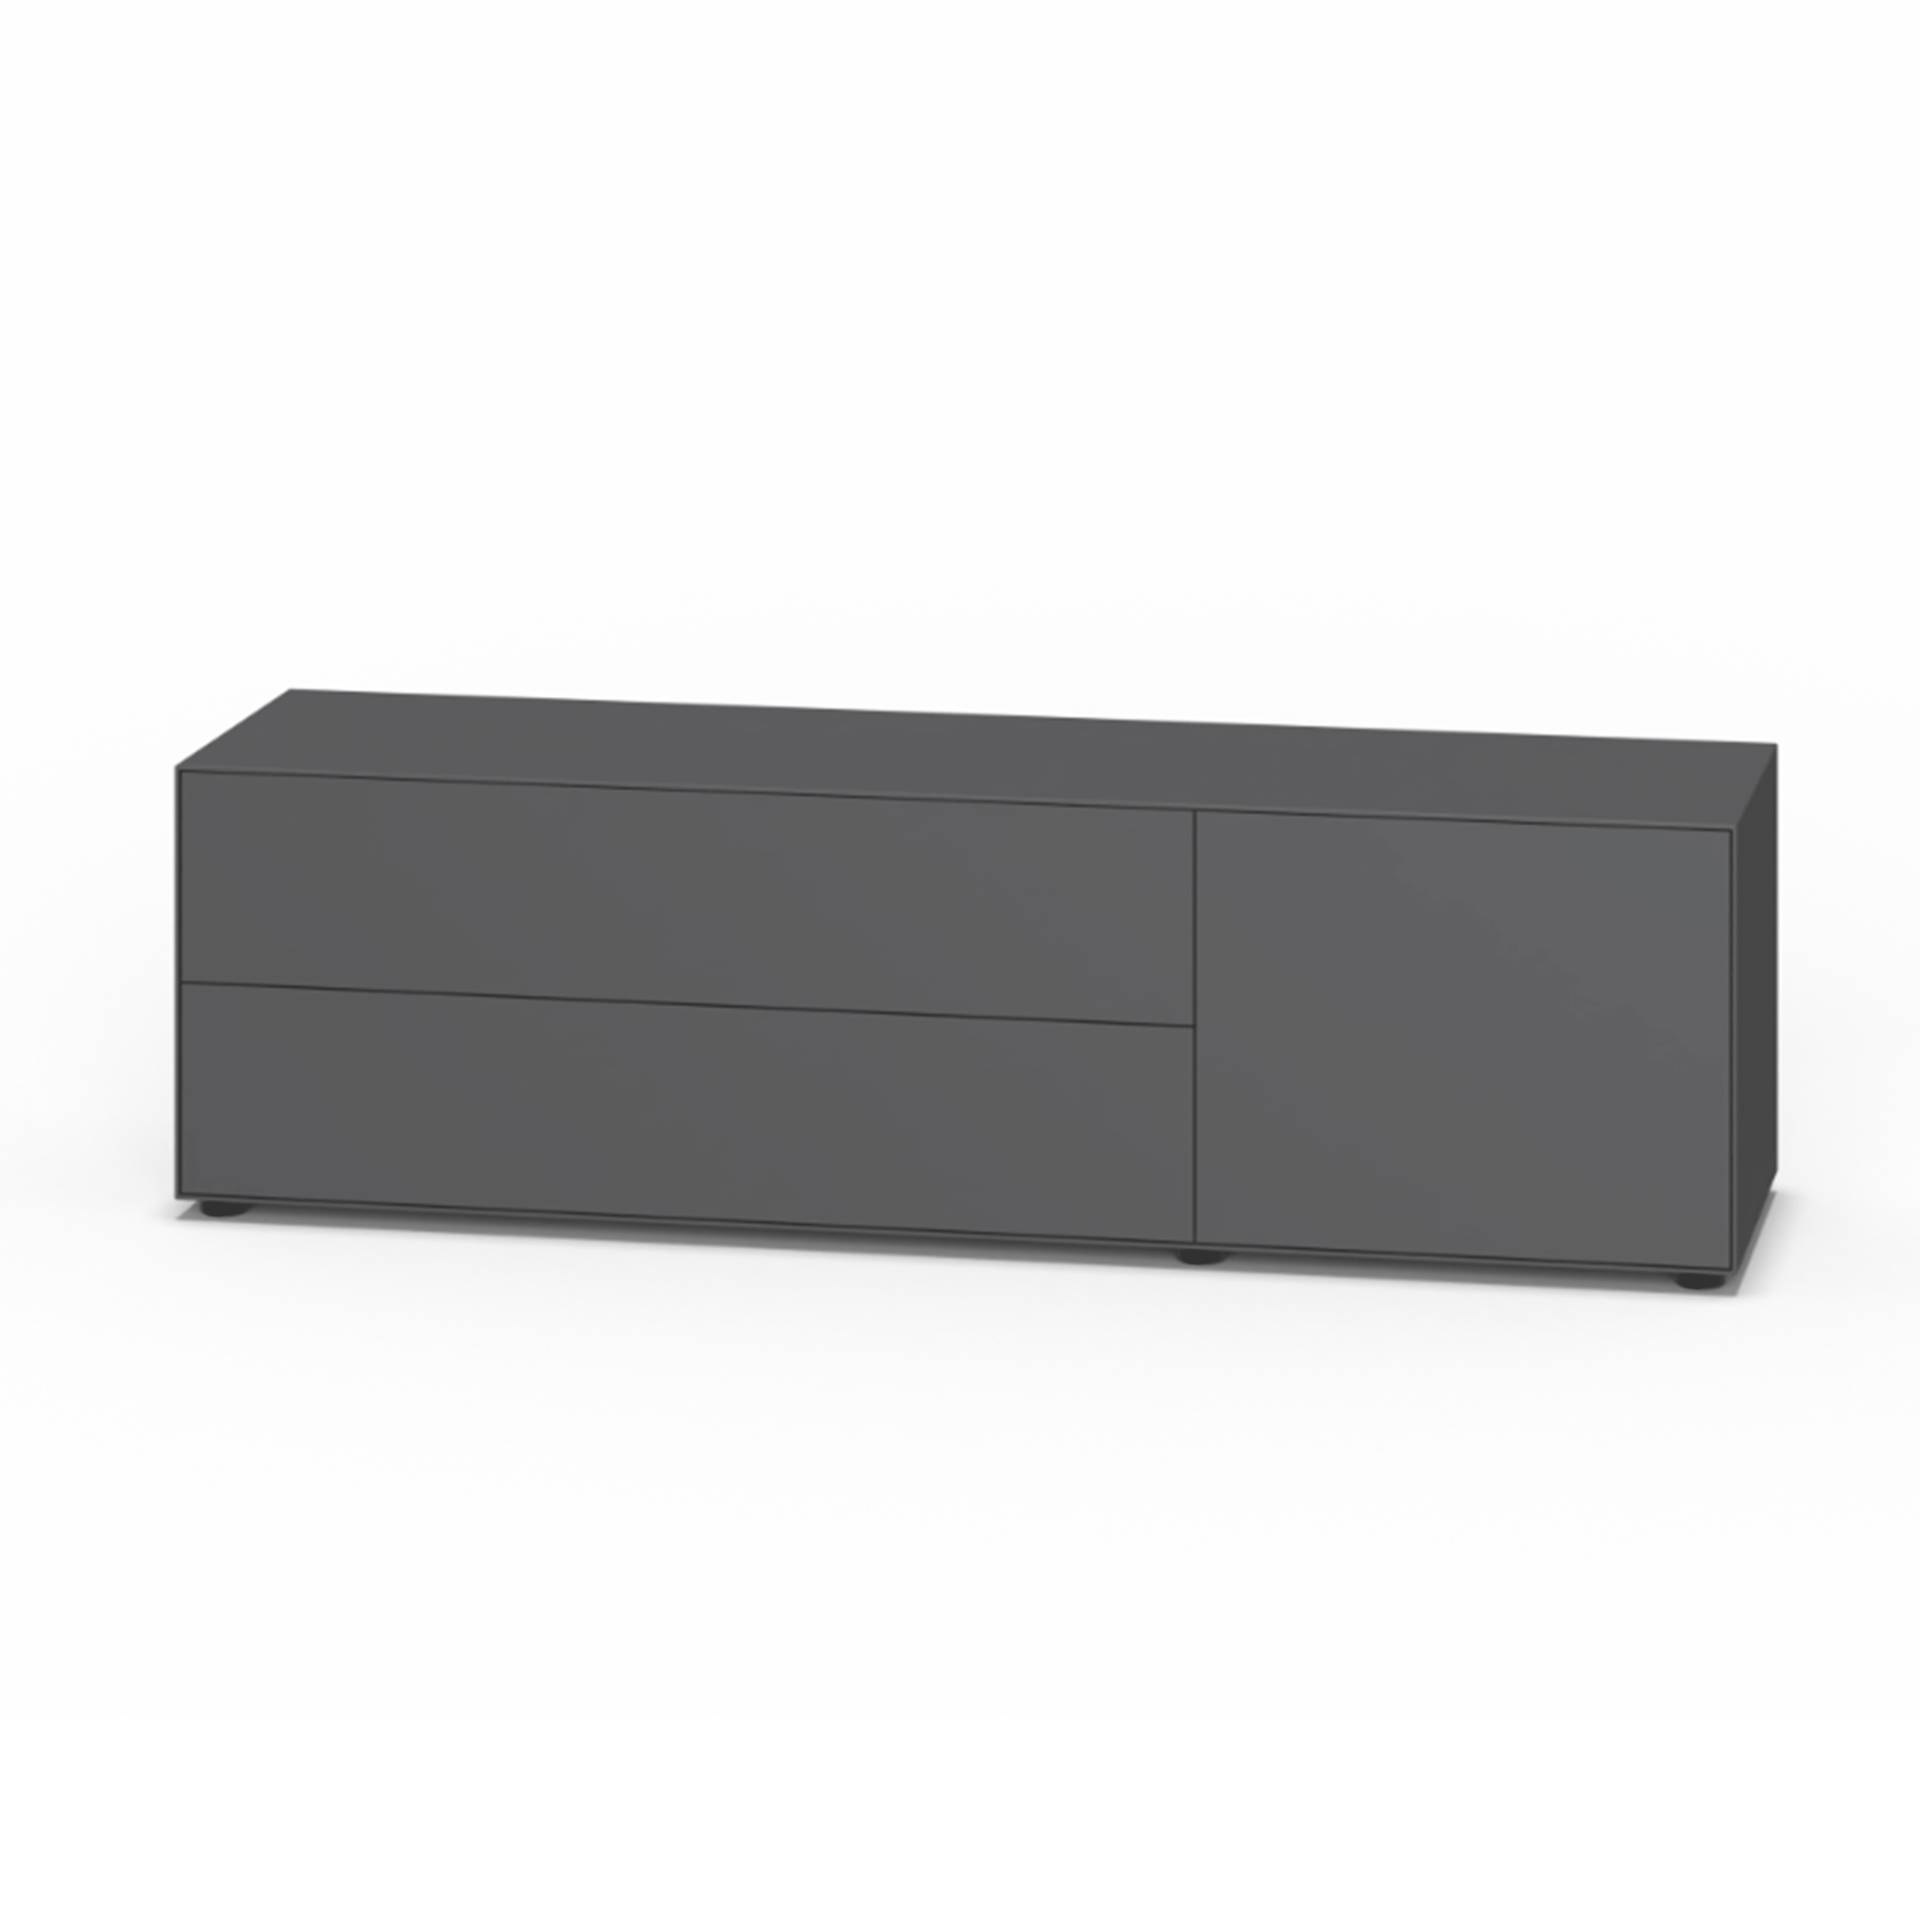 Piure - Nex Pur Box Schubkastenbox/Kommode 180x52,5cm - graphit/MDF matt lackiert/mit Gleitfüße/inkl. Verstärkungsschiene von Piure